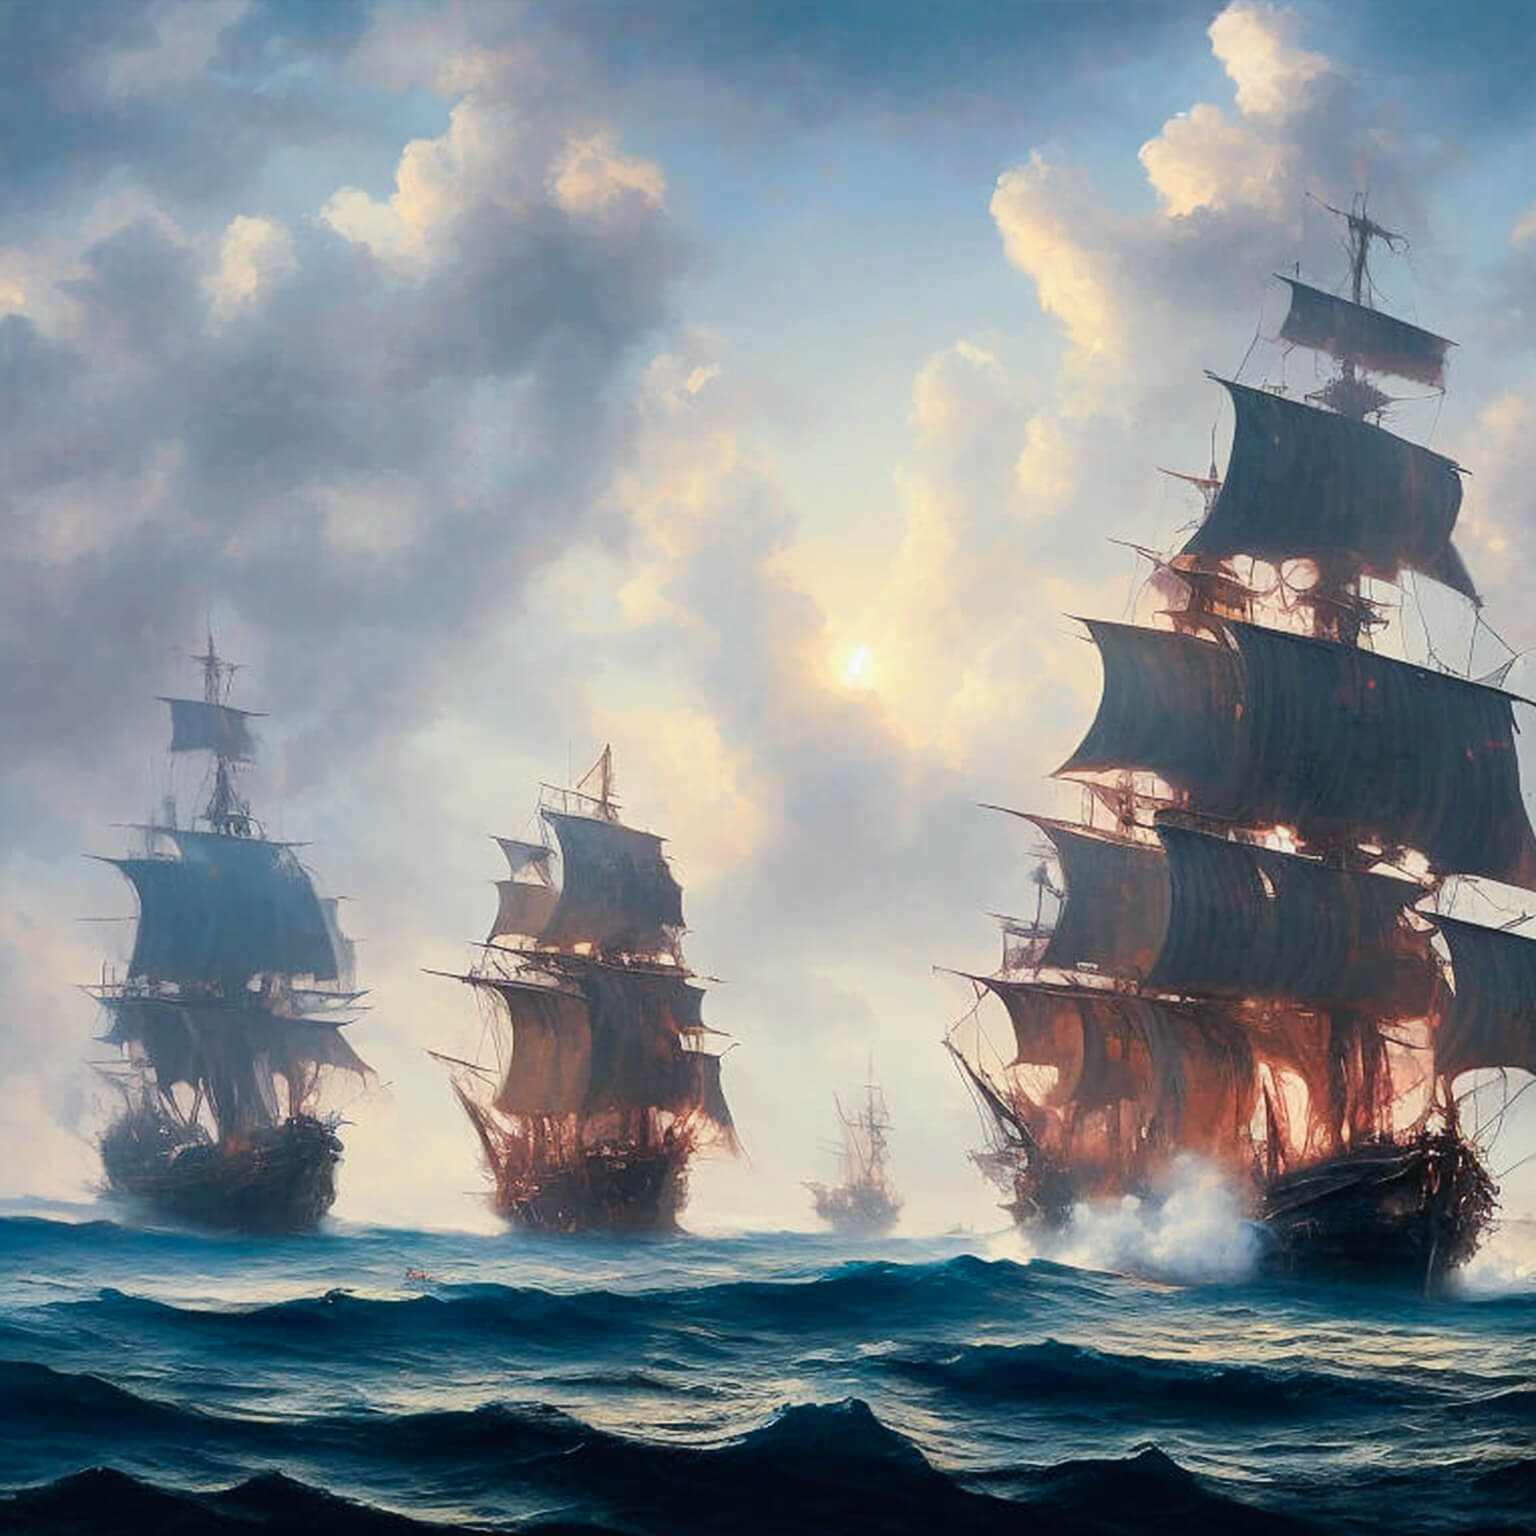 Ein KI Bild von einer Flotte von alten Segelschiffe, die Ihre Kanonen abfeuern